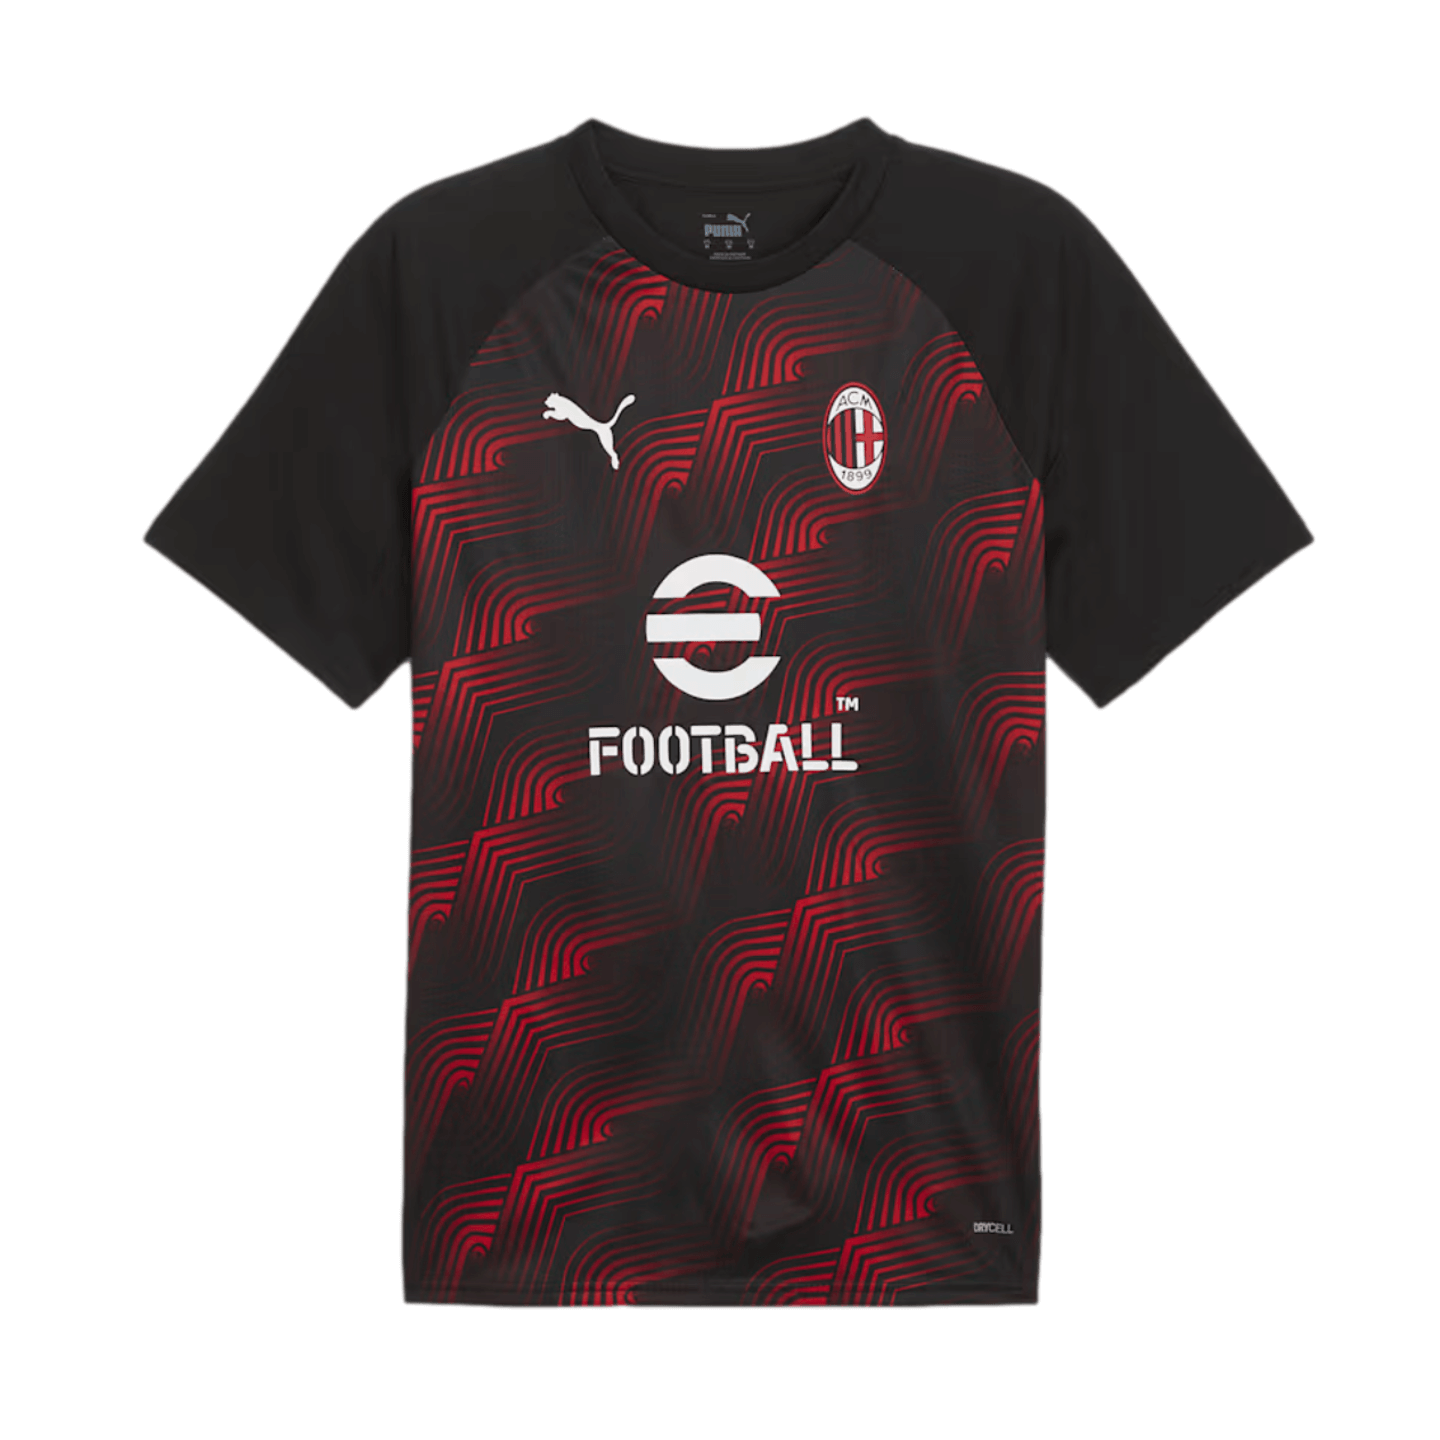 Camiseta prepartido del AC Milan de Puma